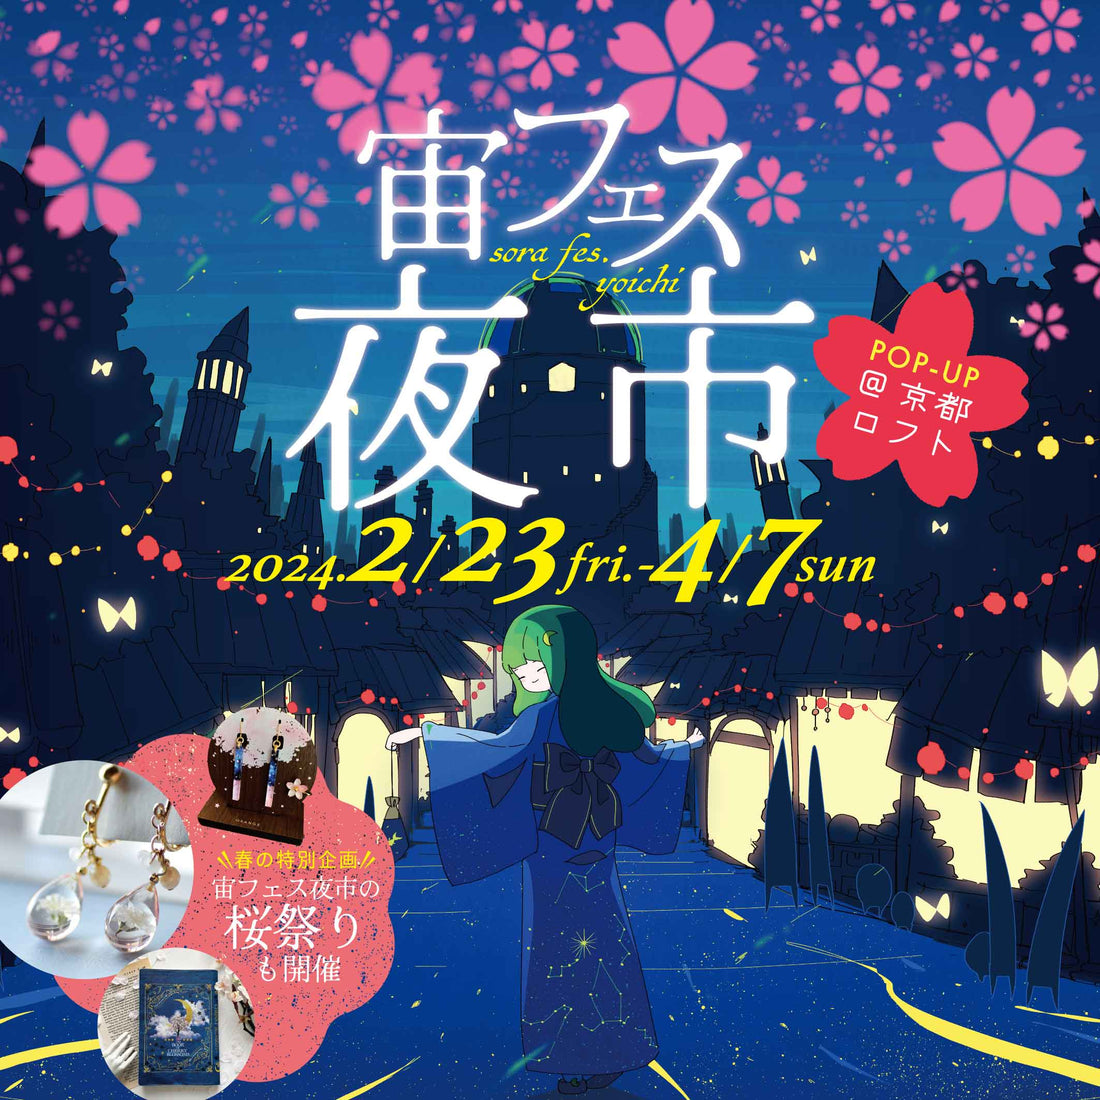 🌸宙フェスが京都に帰ってくる🌸「宙フェス夜市POP-UP@京都ロフト」2/23（金祝）～4/7（日）開催決定！